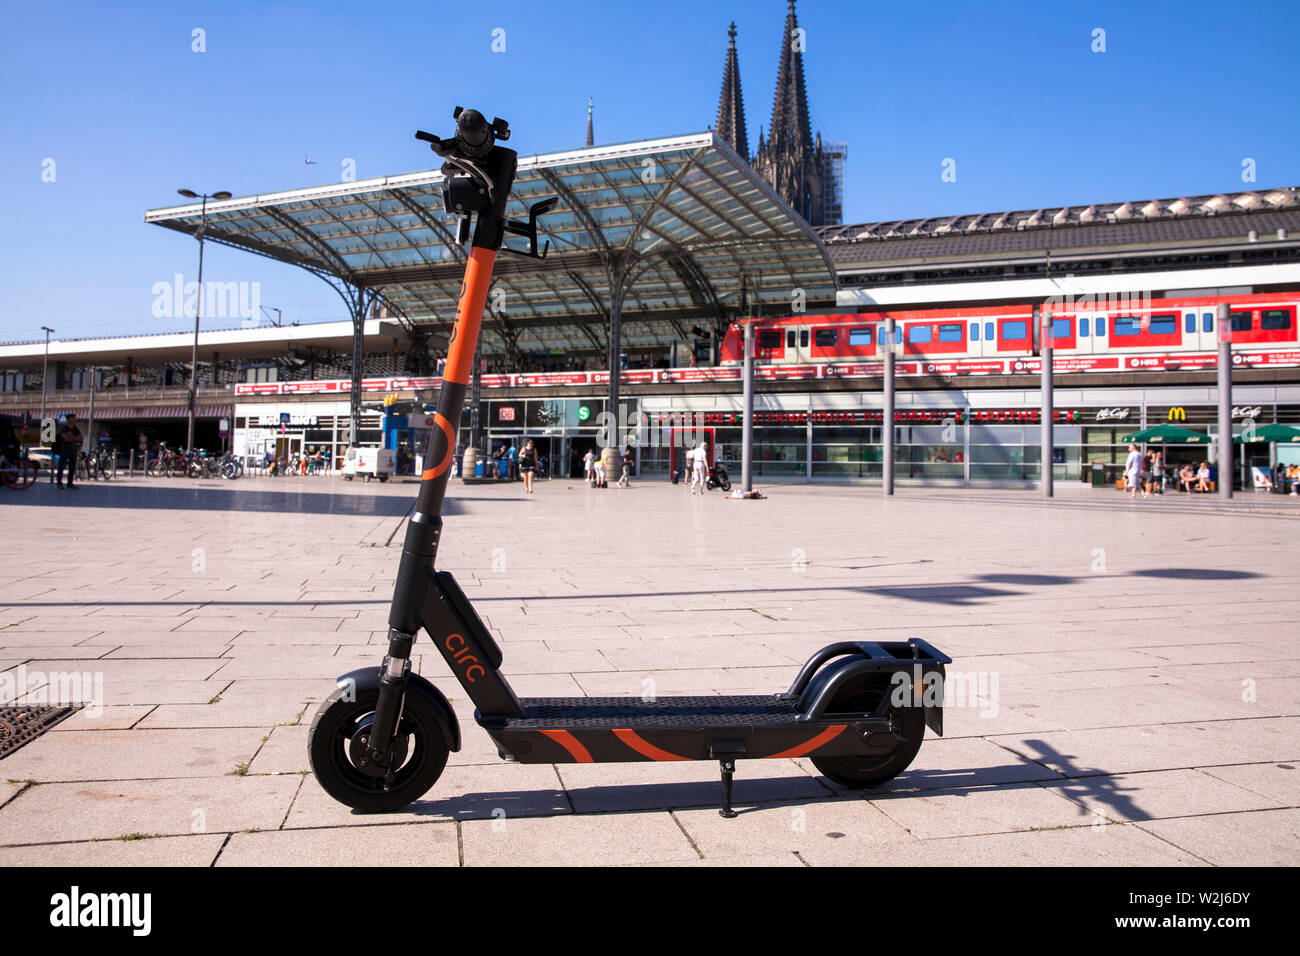 Les scooters électriques Circ pour la location, à la gare principale, de la cathédrale, Cologne, Allemagne. Ceci Elektroscooter zum mieten am Hauptbahnhof, Der Dom, Koel Banque D'Images